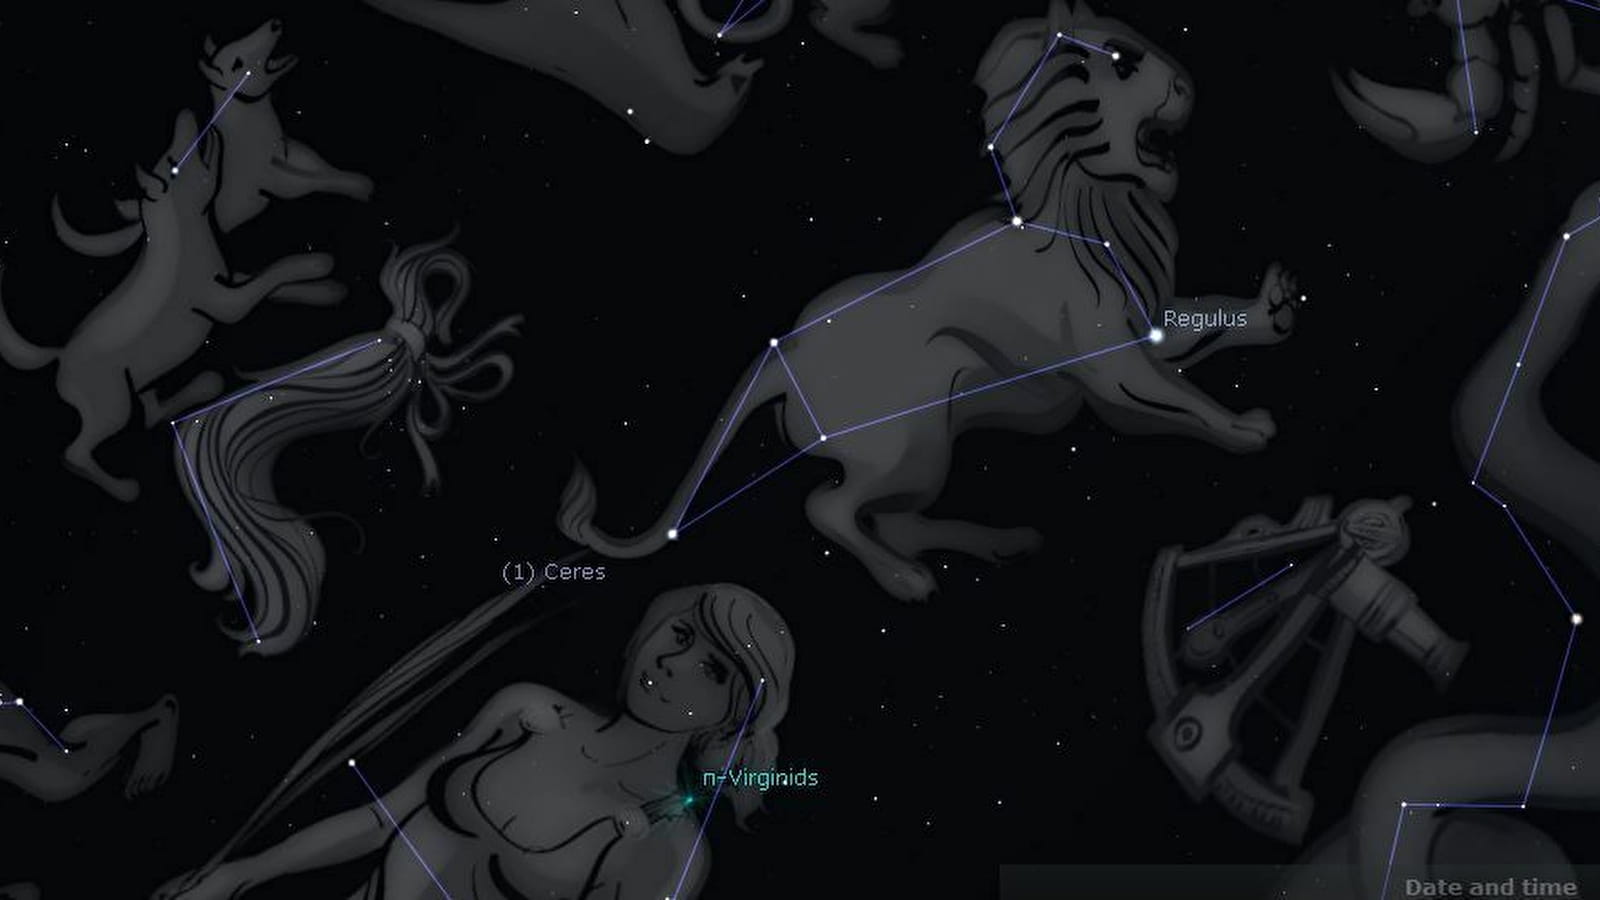 Soirée astronomie - constellations et mythologie